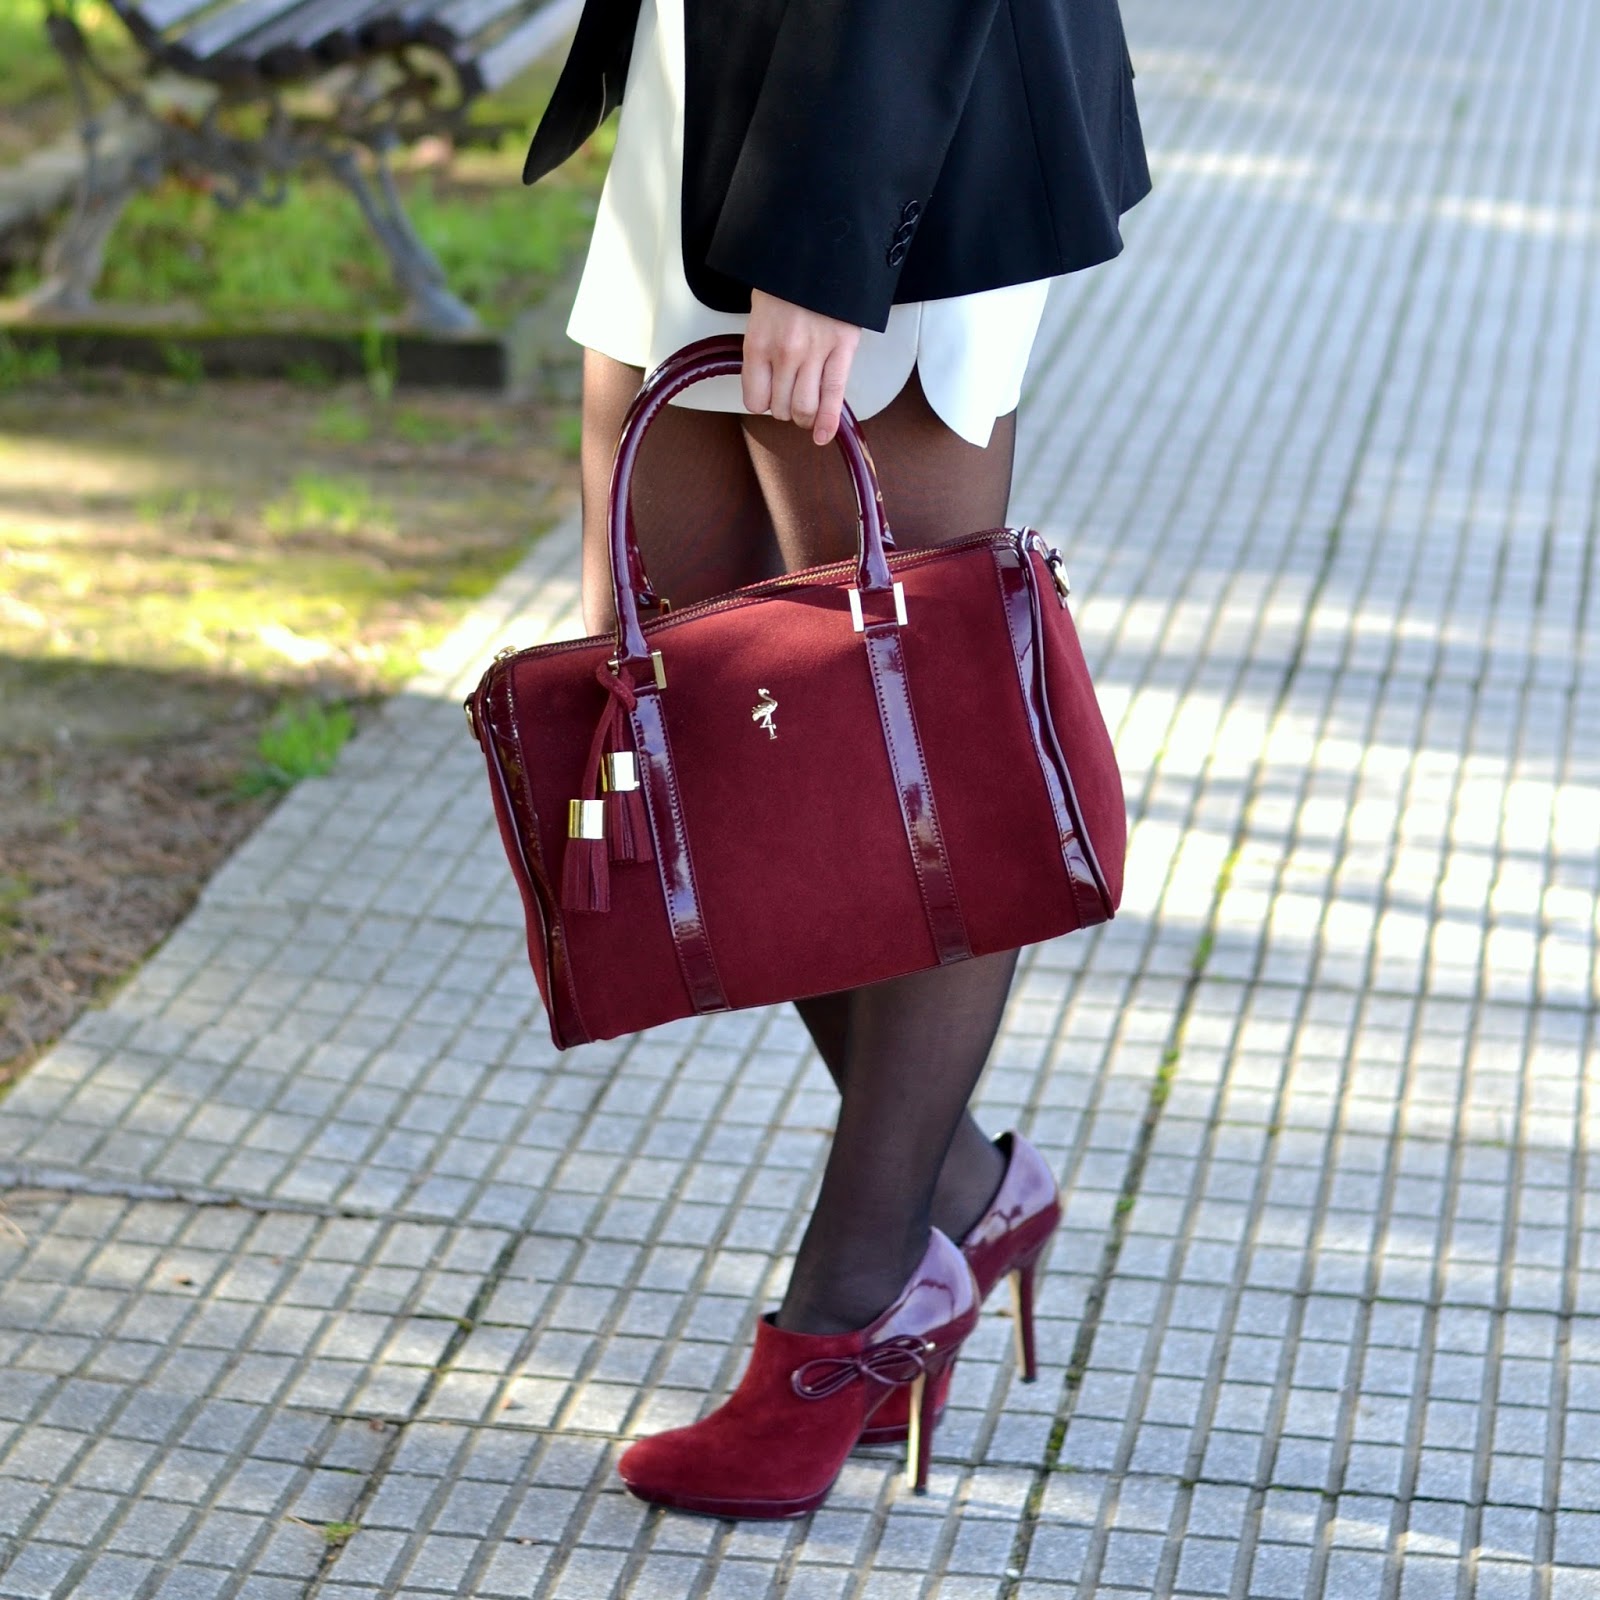 Menbur burgundy heels and bag